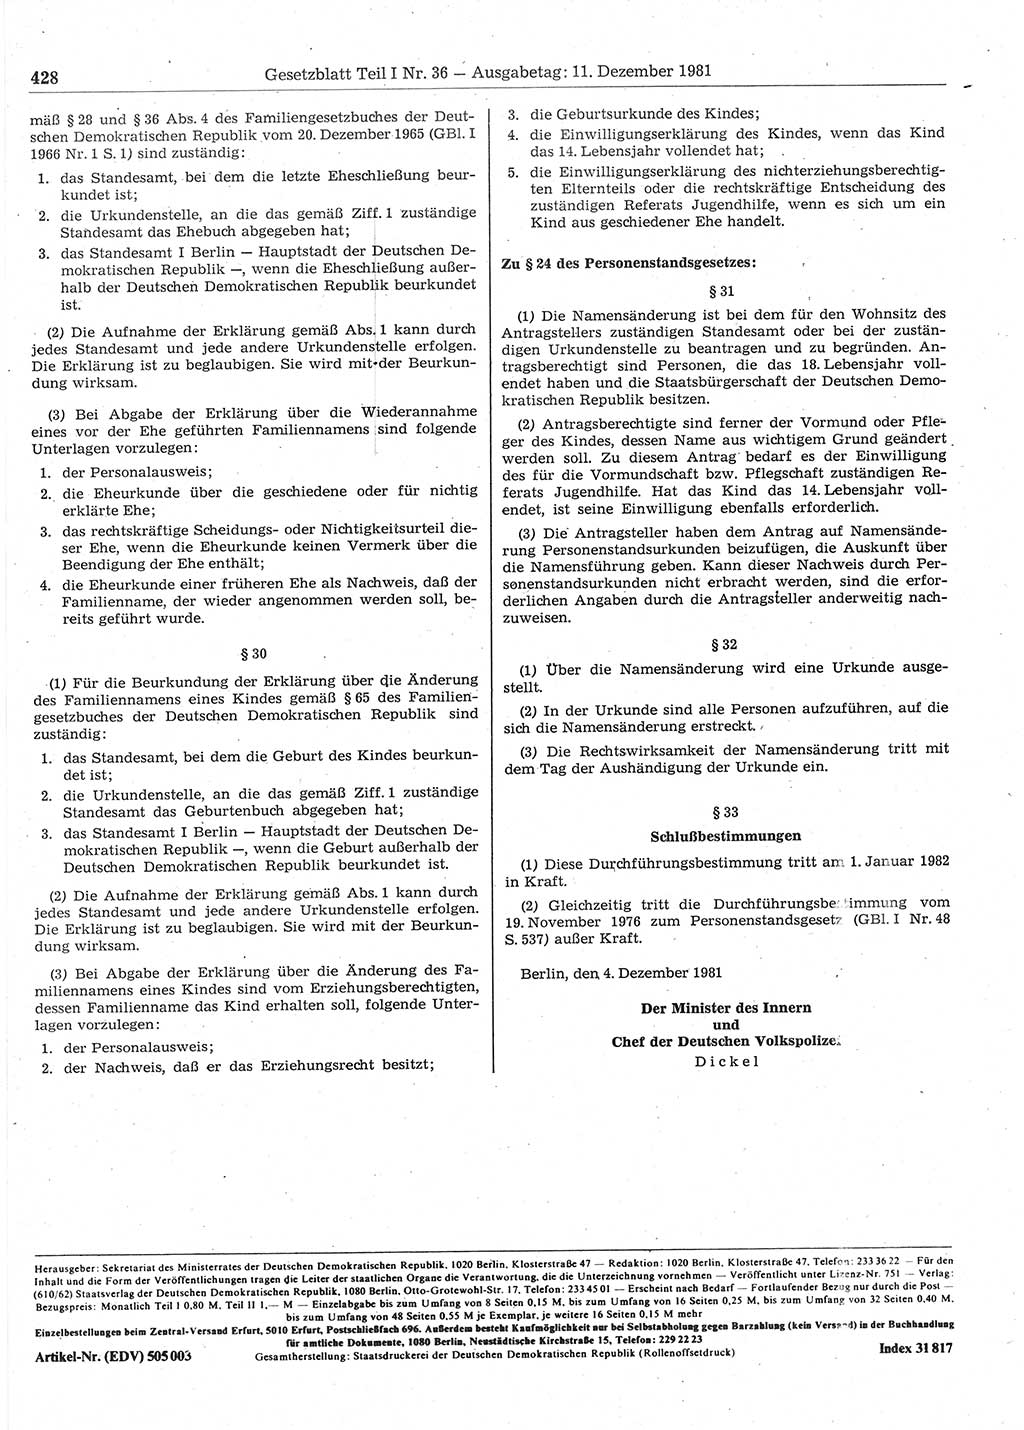 Gesetzblatt (GBl.) der Deutschen Demokratischen Republik (DDR) Teil Ⅰ 1981, Seite 428 (GBl. DDR Ⅰ 1981, S. 428)